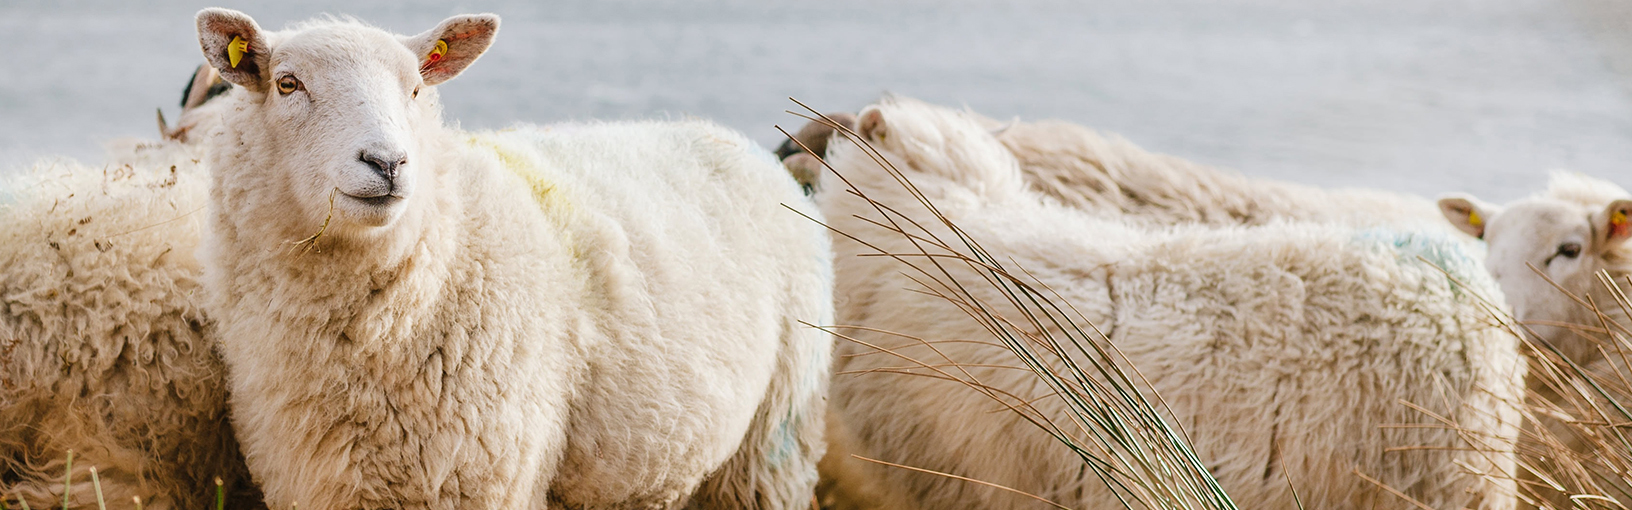 Garn av høy kvalitet til strikking, hekling og toving LANA GROSSA<br> ull & garn | Høst / Vinter